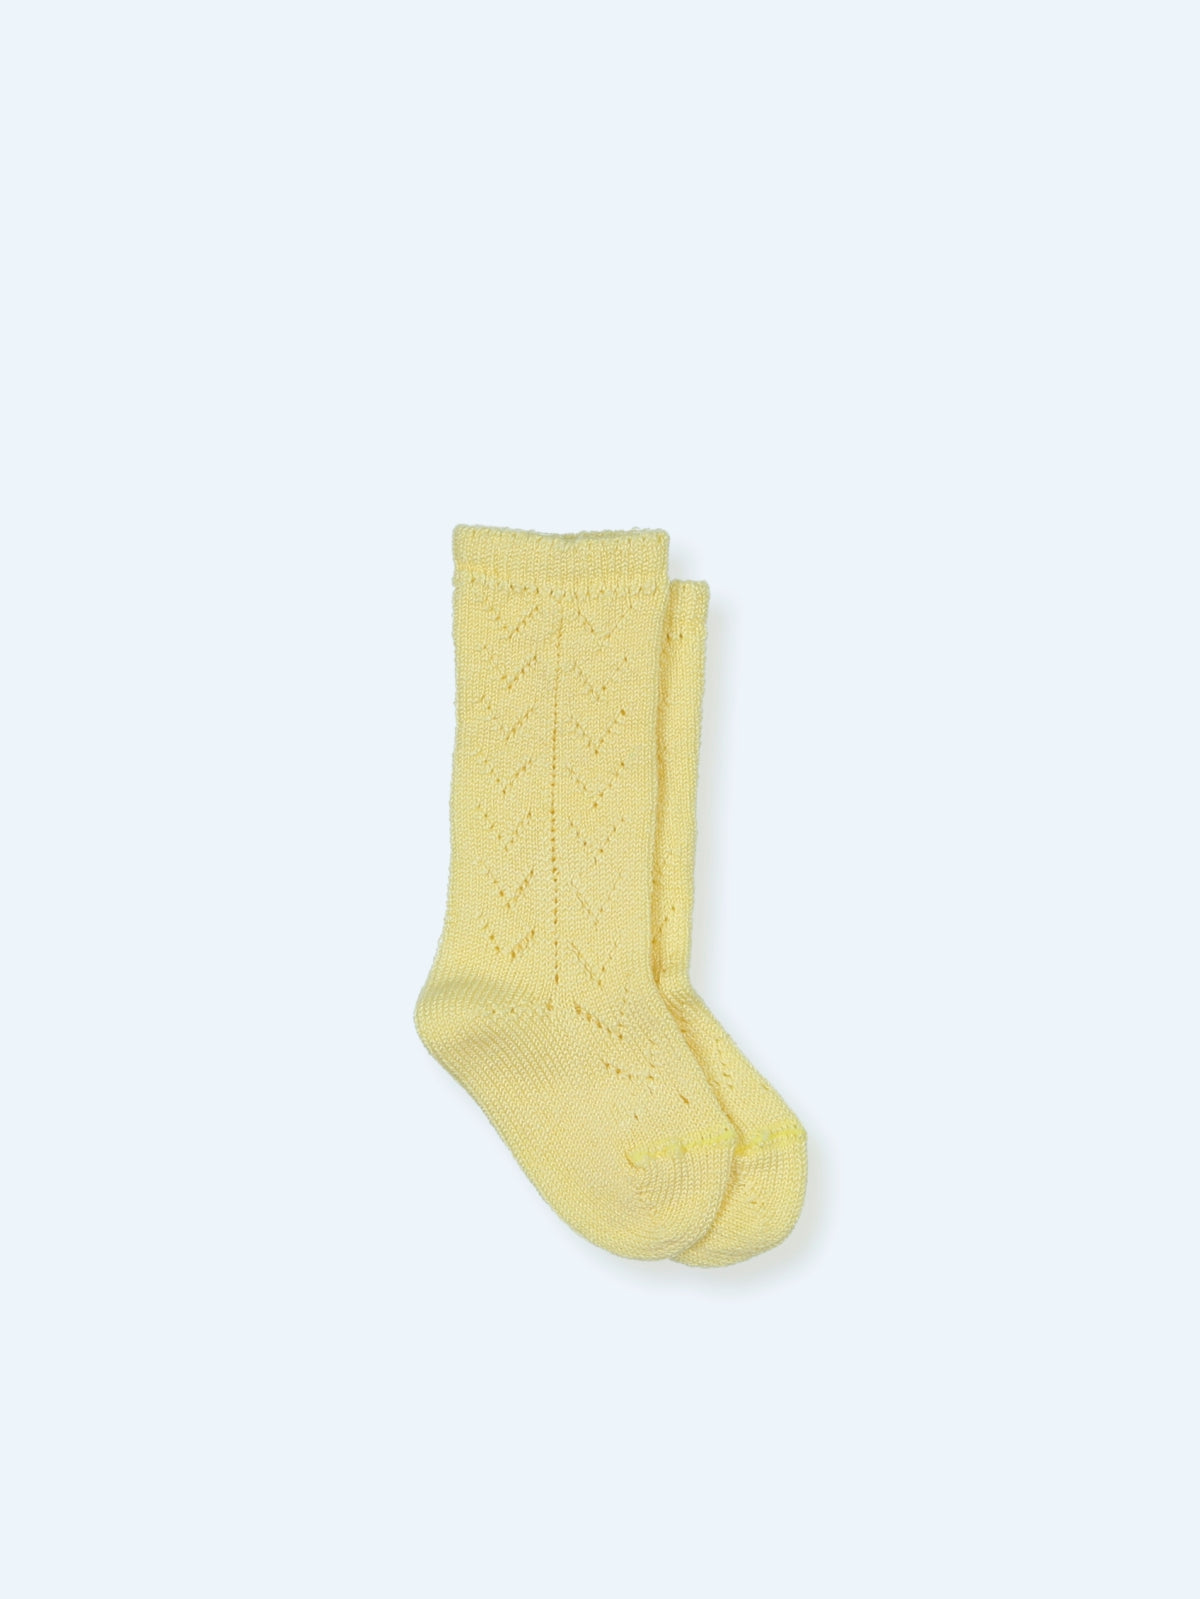 Knee Socks V Pattern- White & Ivory